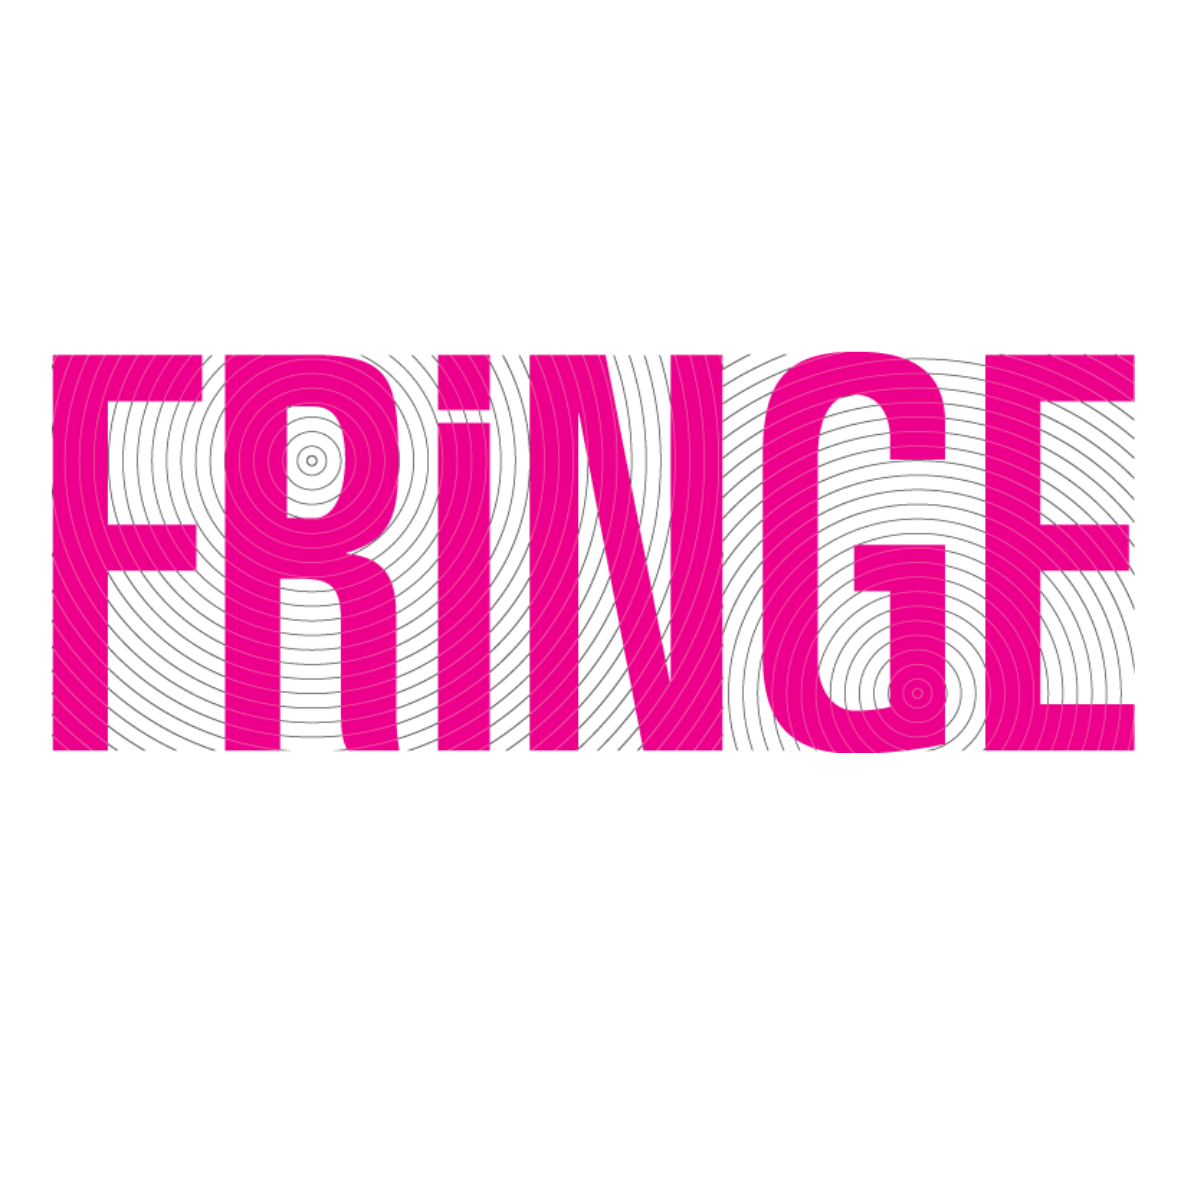 Amsterdam Fringe Festival 2015